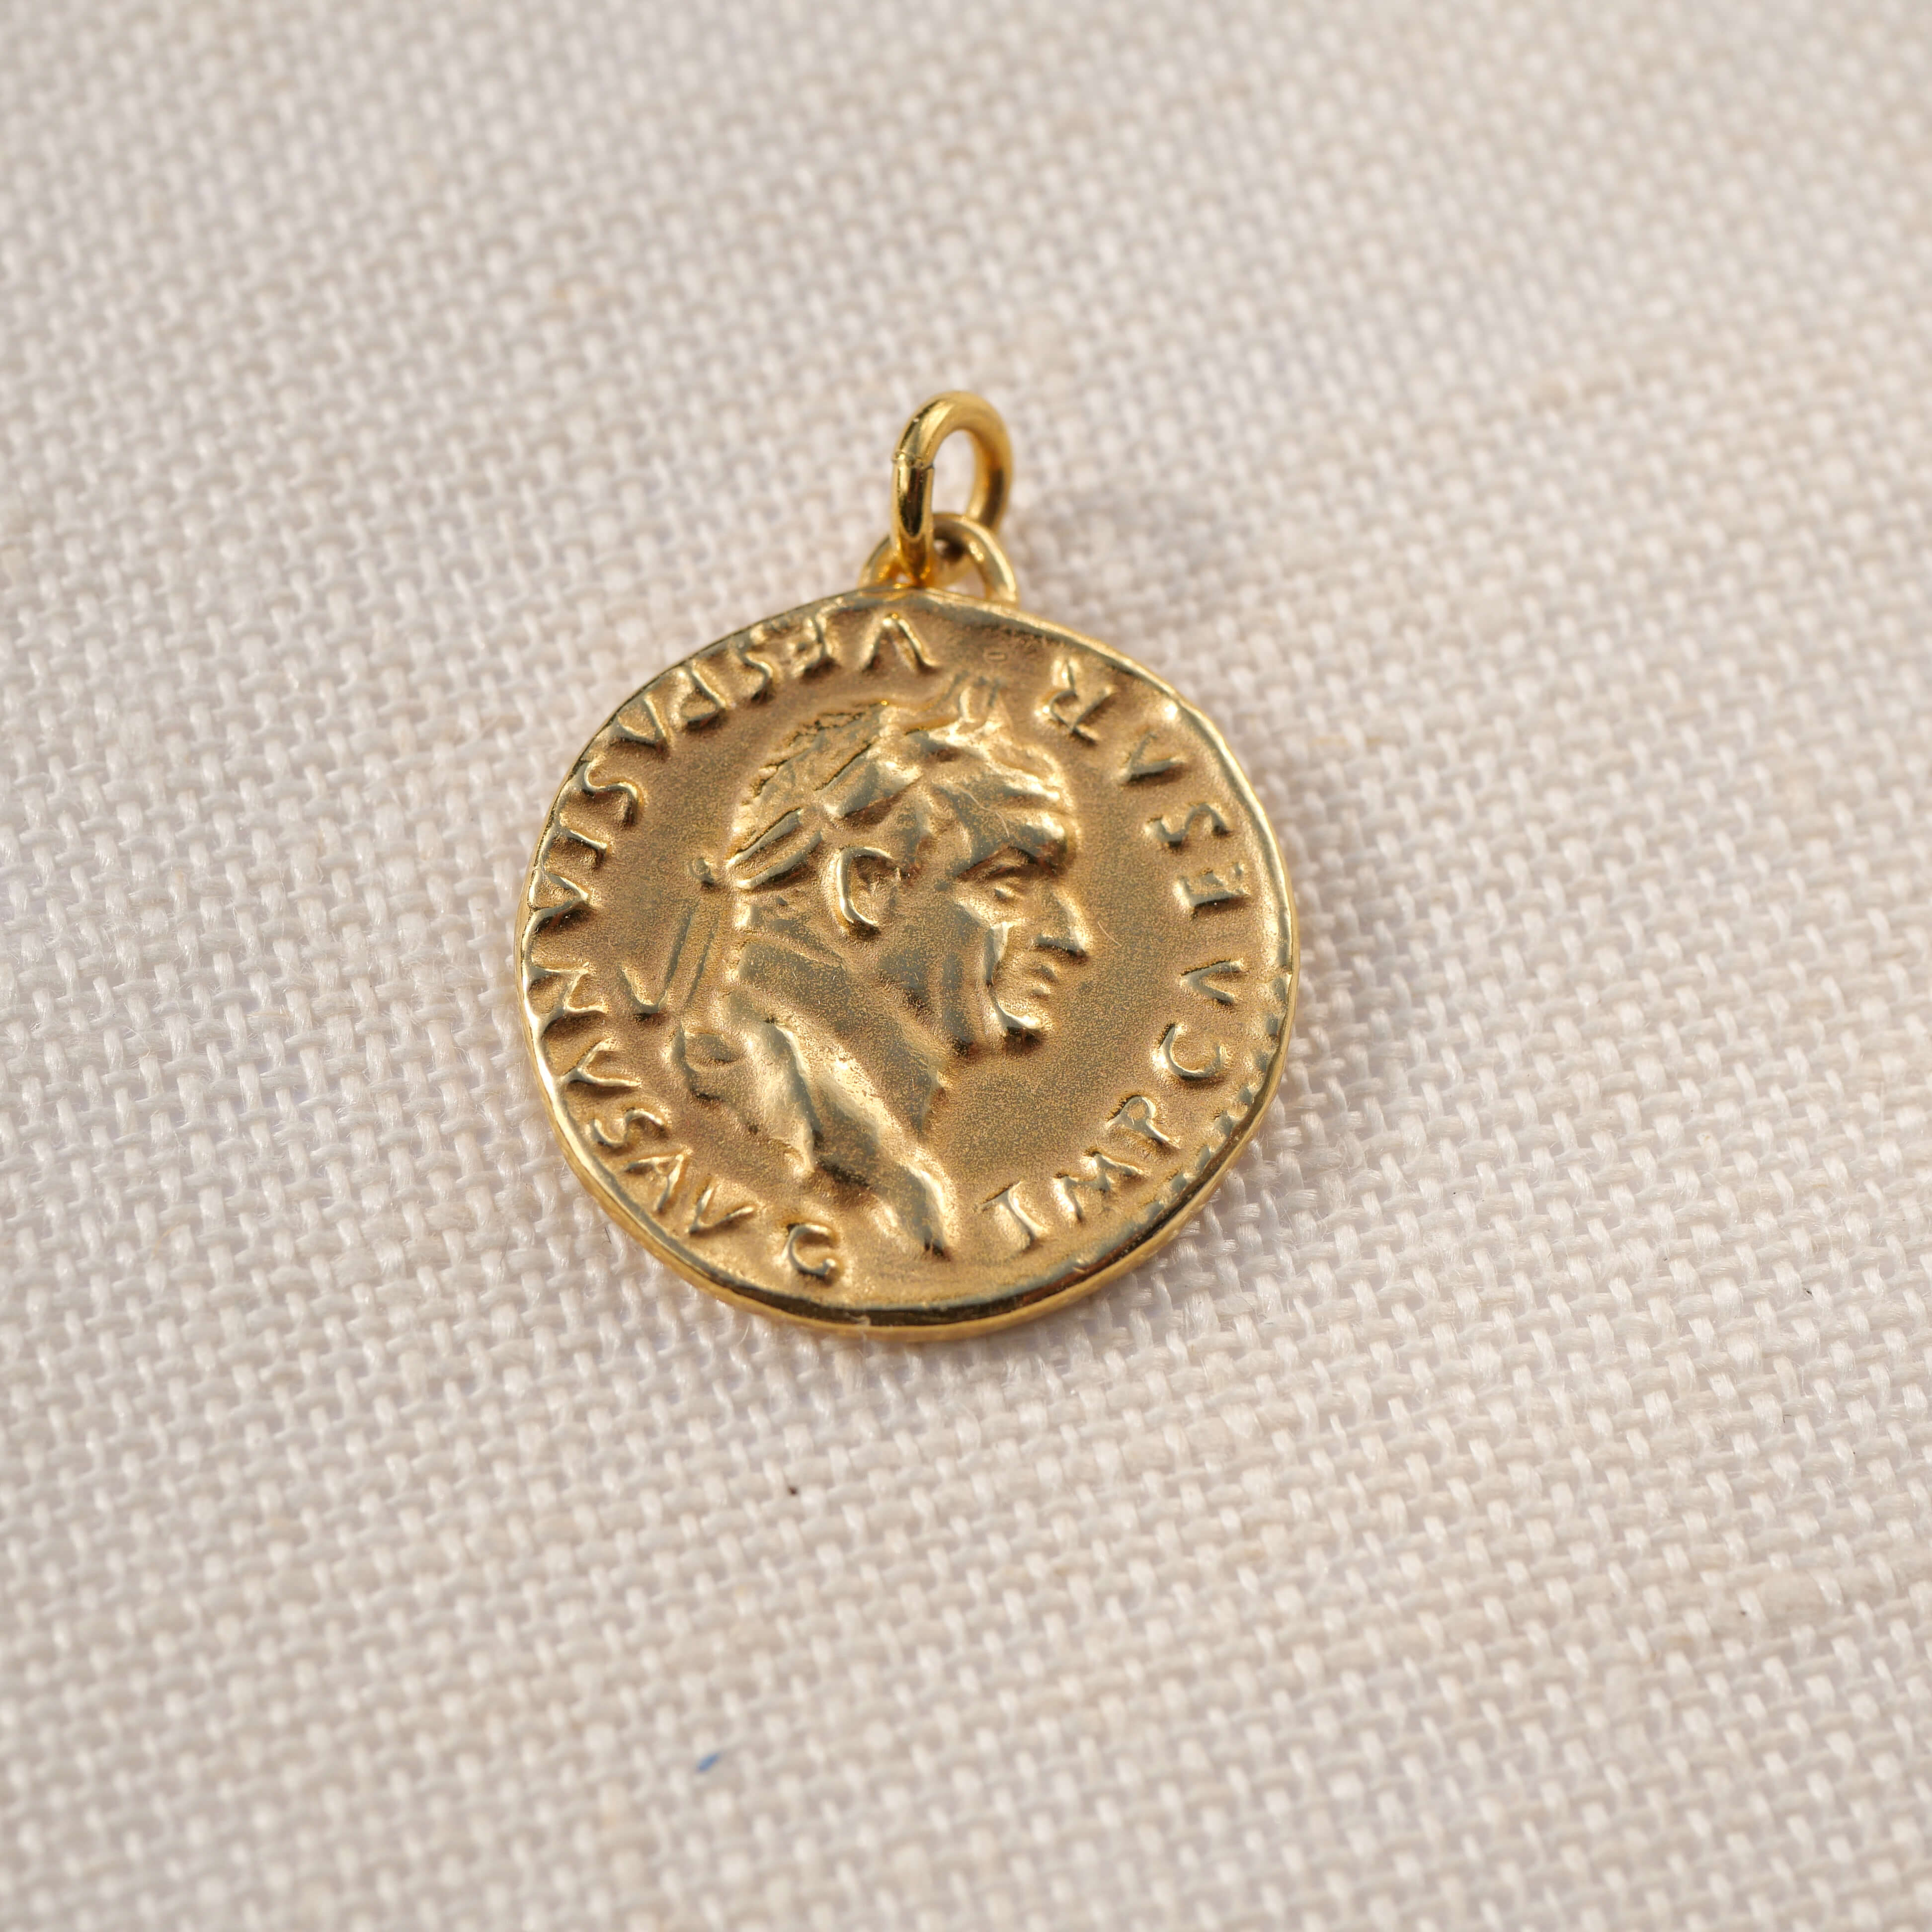 Rückseite der Münze Fortuna, Caesar Augustus, Kettenanhänger Fortuna, die Göttin des Glücks aus 585er Gelbgold, Talsiman, Geschenk, Glücksbringer - TRUE NUGGETS o